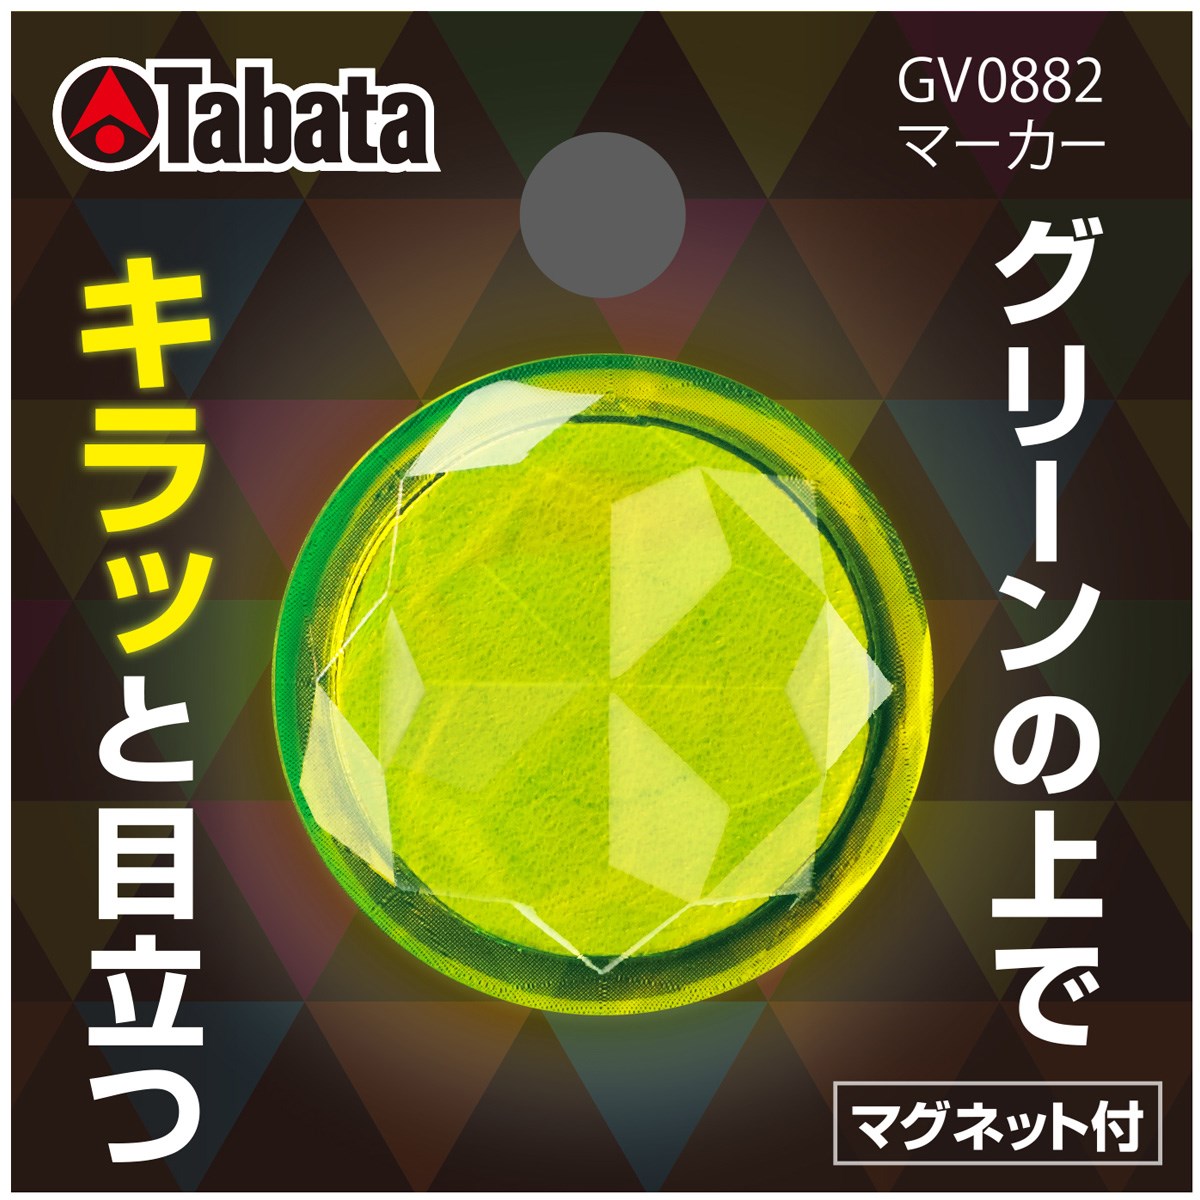 264円 【66%OFF!】 タバタ Tabata ゴルフ マーカー GV0885